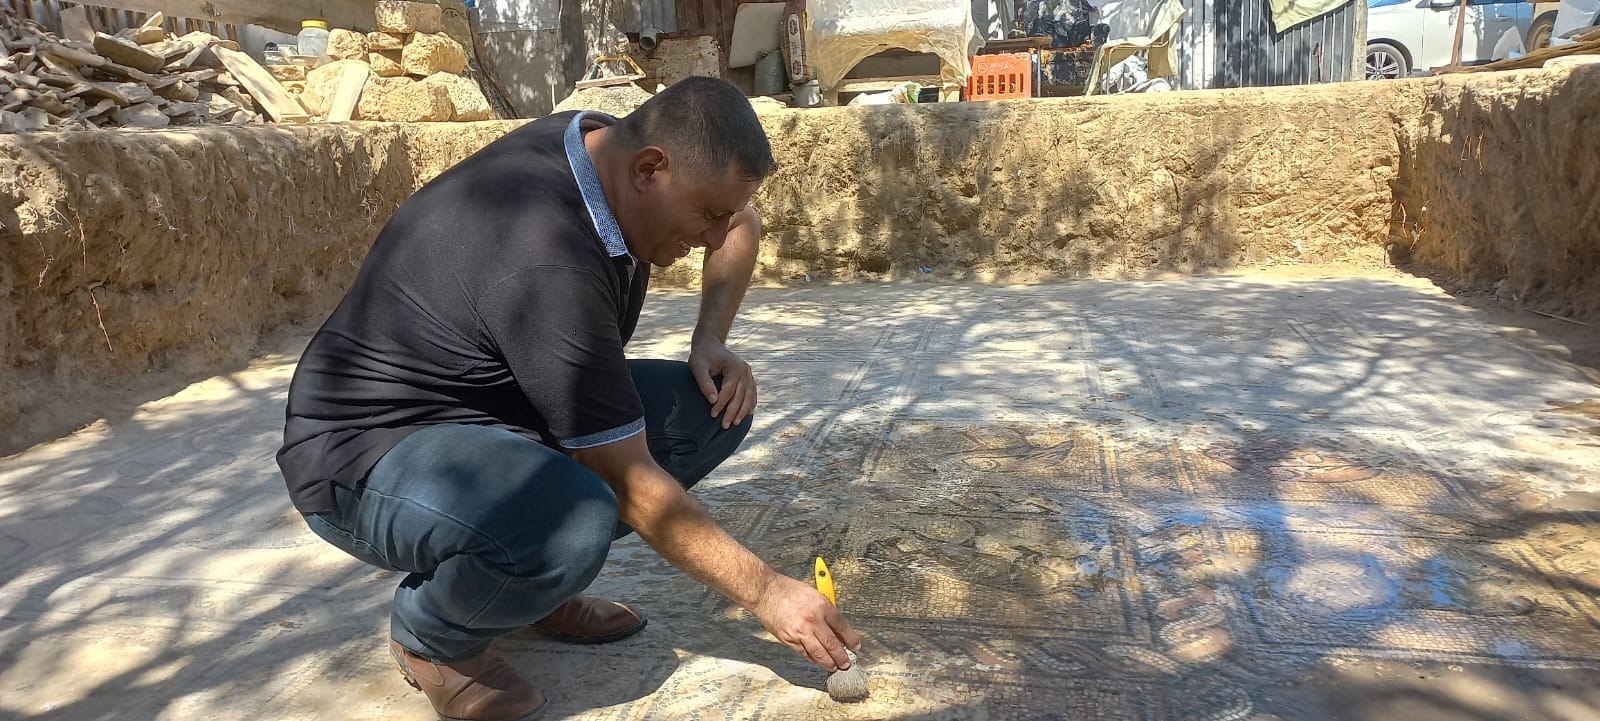 مزارع فلسطيني من البريج في غزة يكتشف وجود لوحة فسيفسائية مزخرفة تعود للعهد البيزنطي 185.jpg